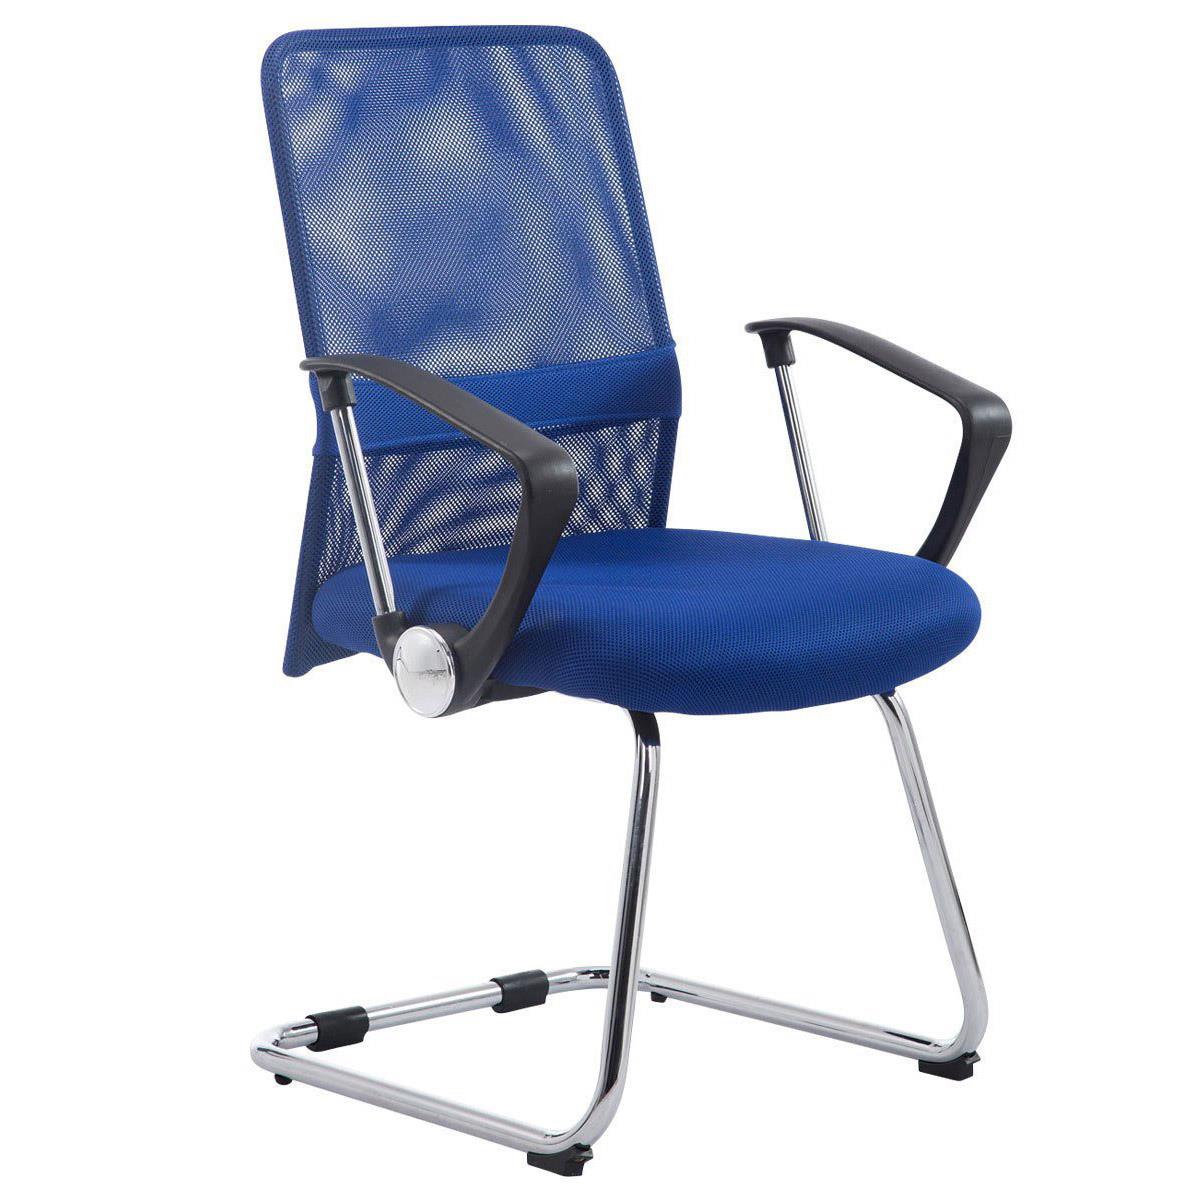 Cadeira de Visita ASPEN V, Assento Acolchoado, Em Malha Respirável, Cor Azul